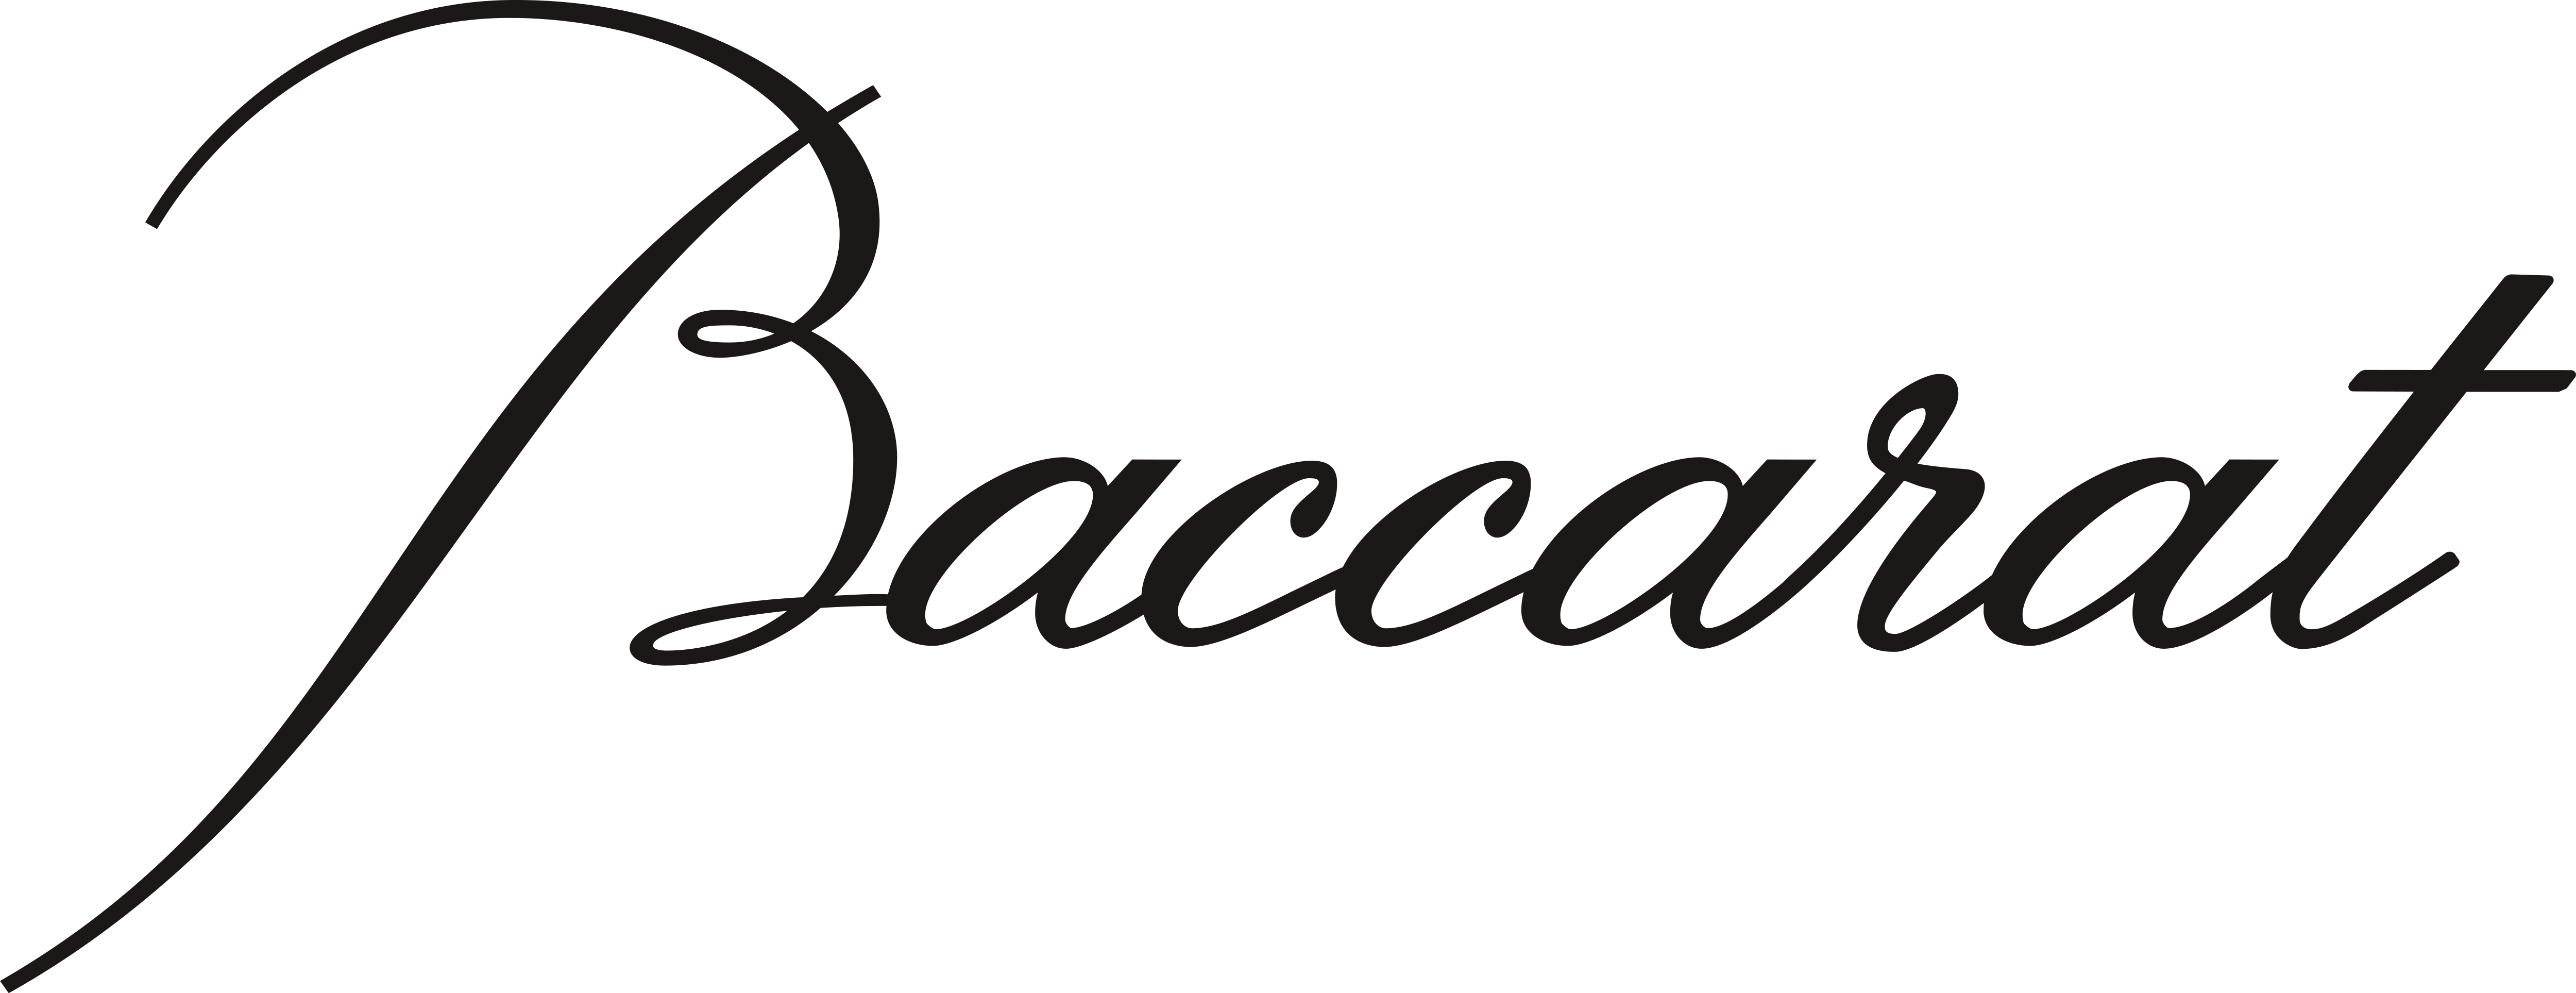 Baccarat – Logos Download